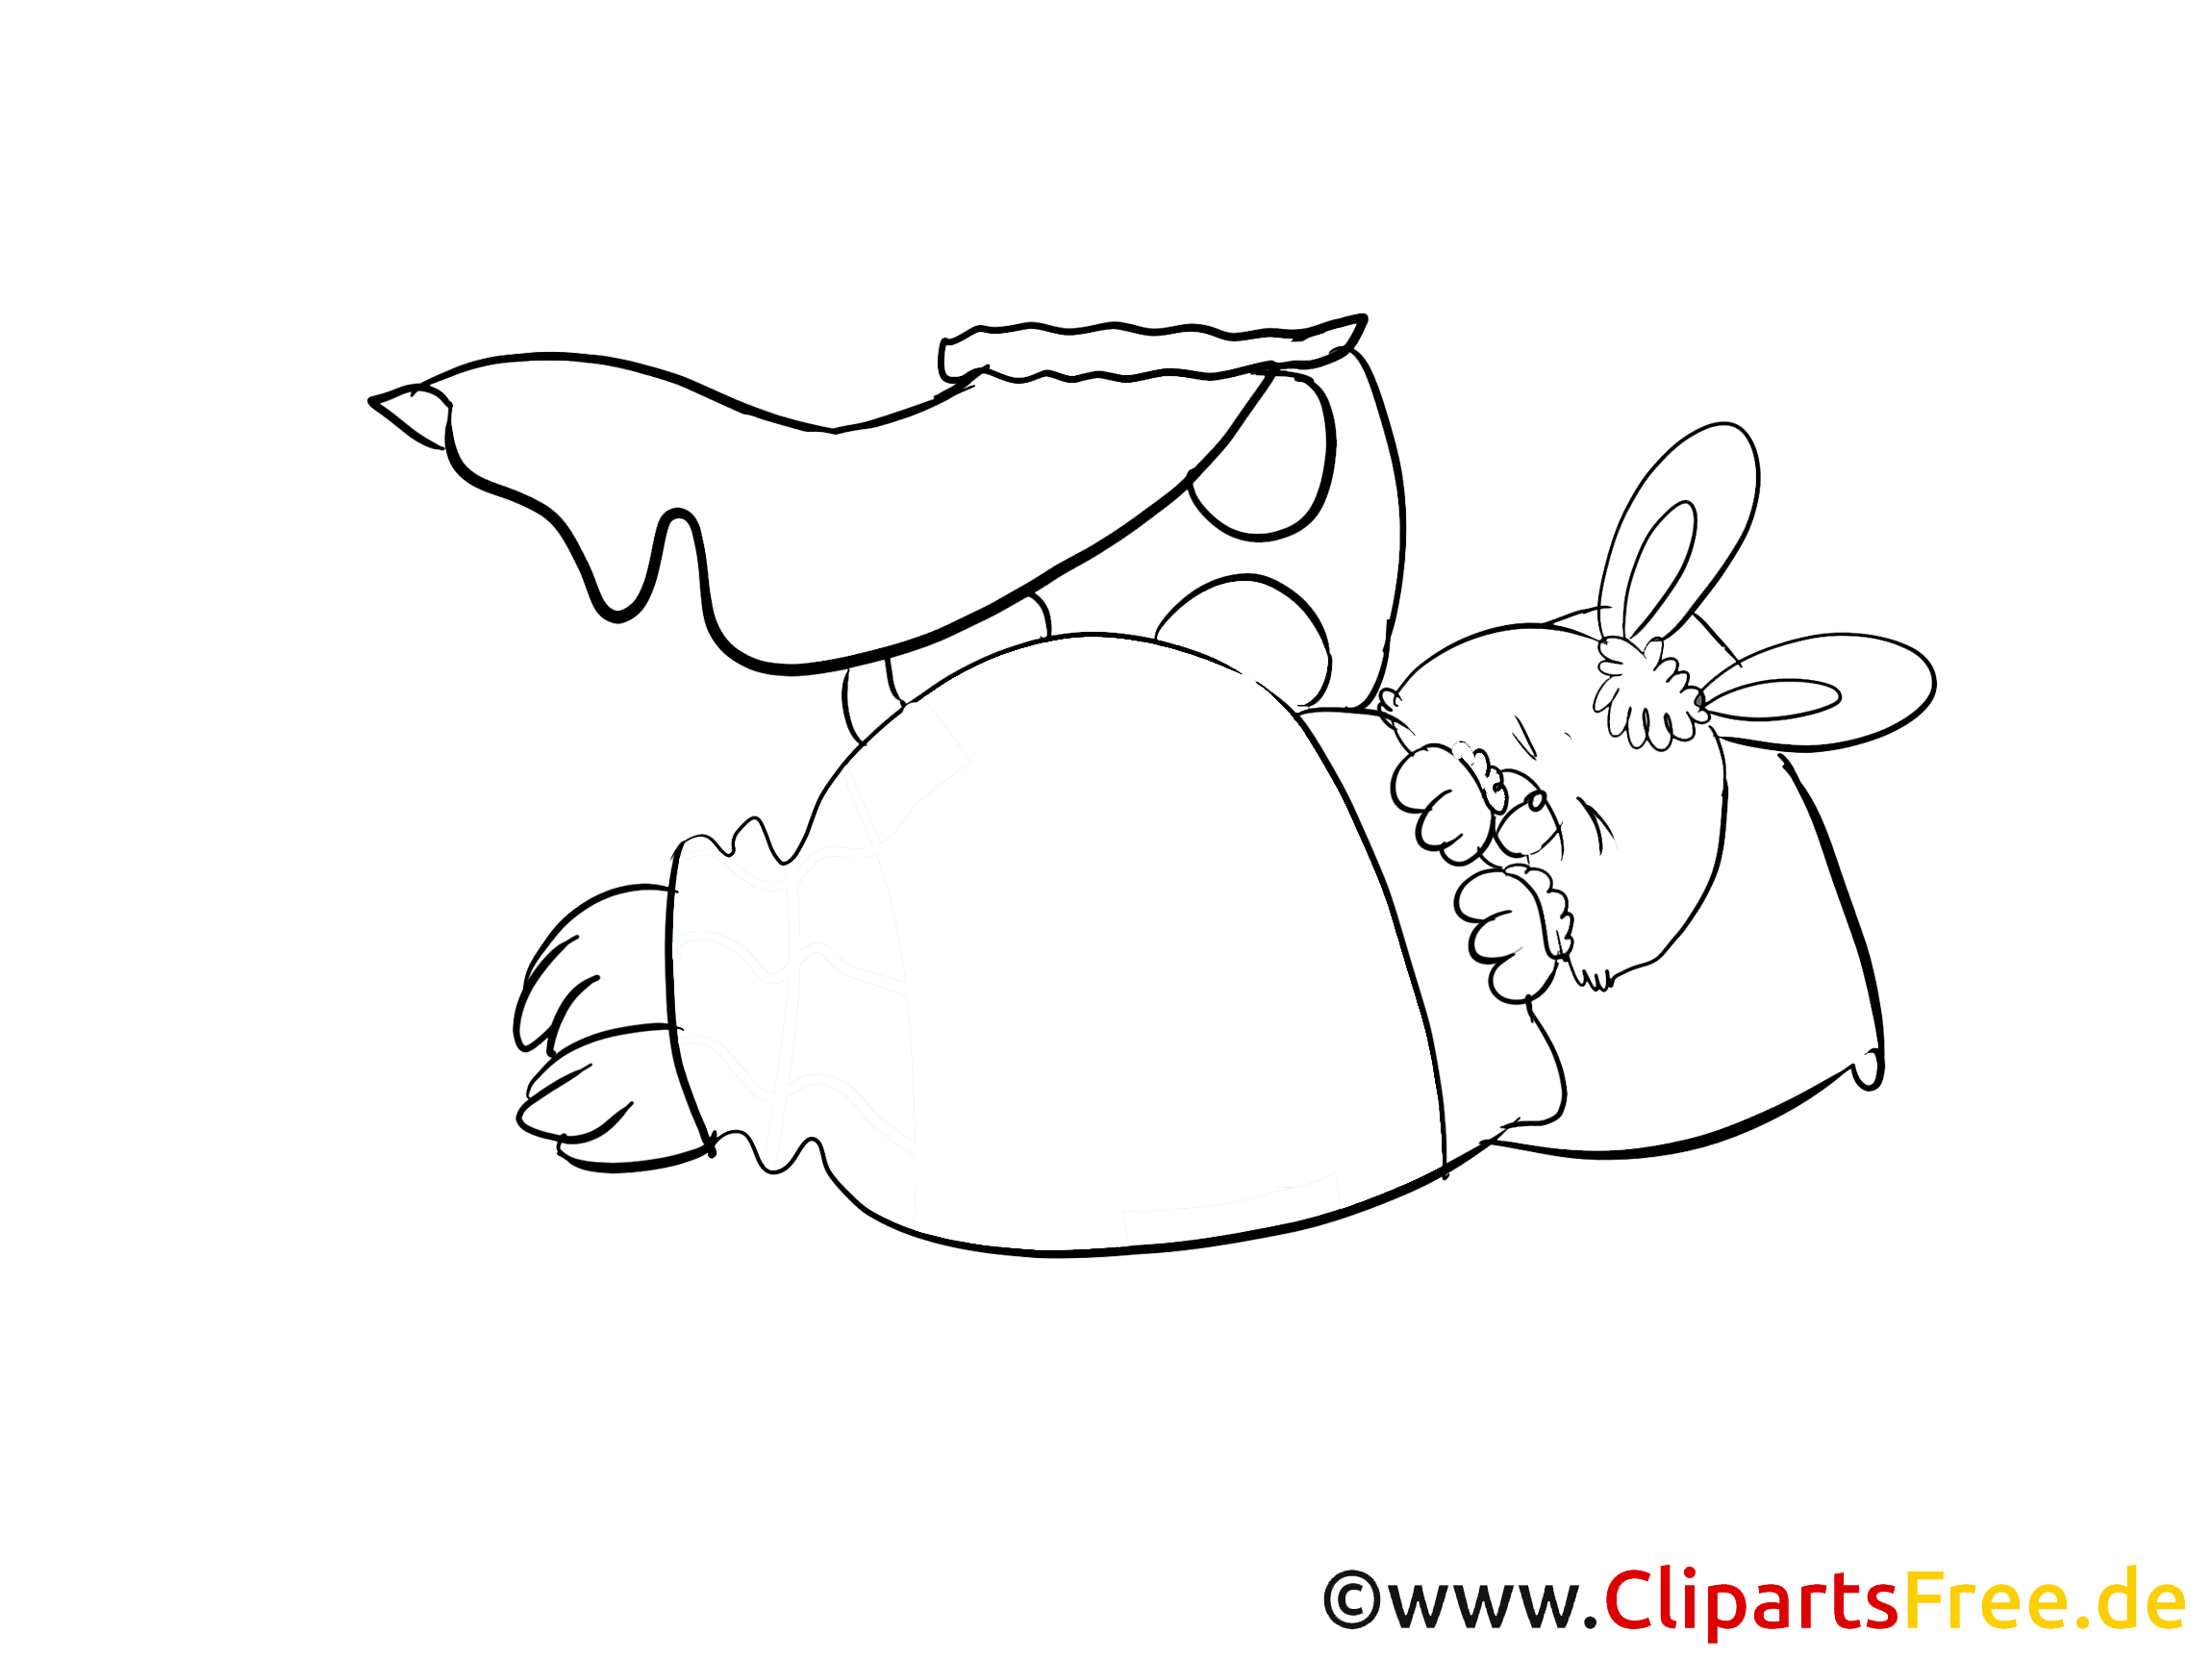 Clip art à colorier lapin - Bonne nuit dessin